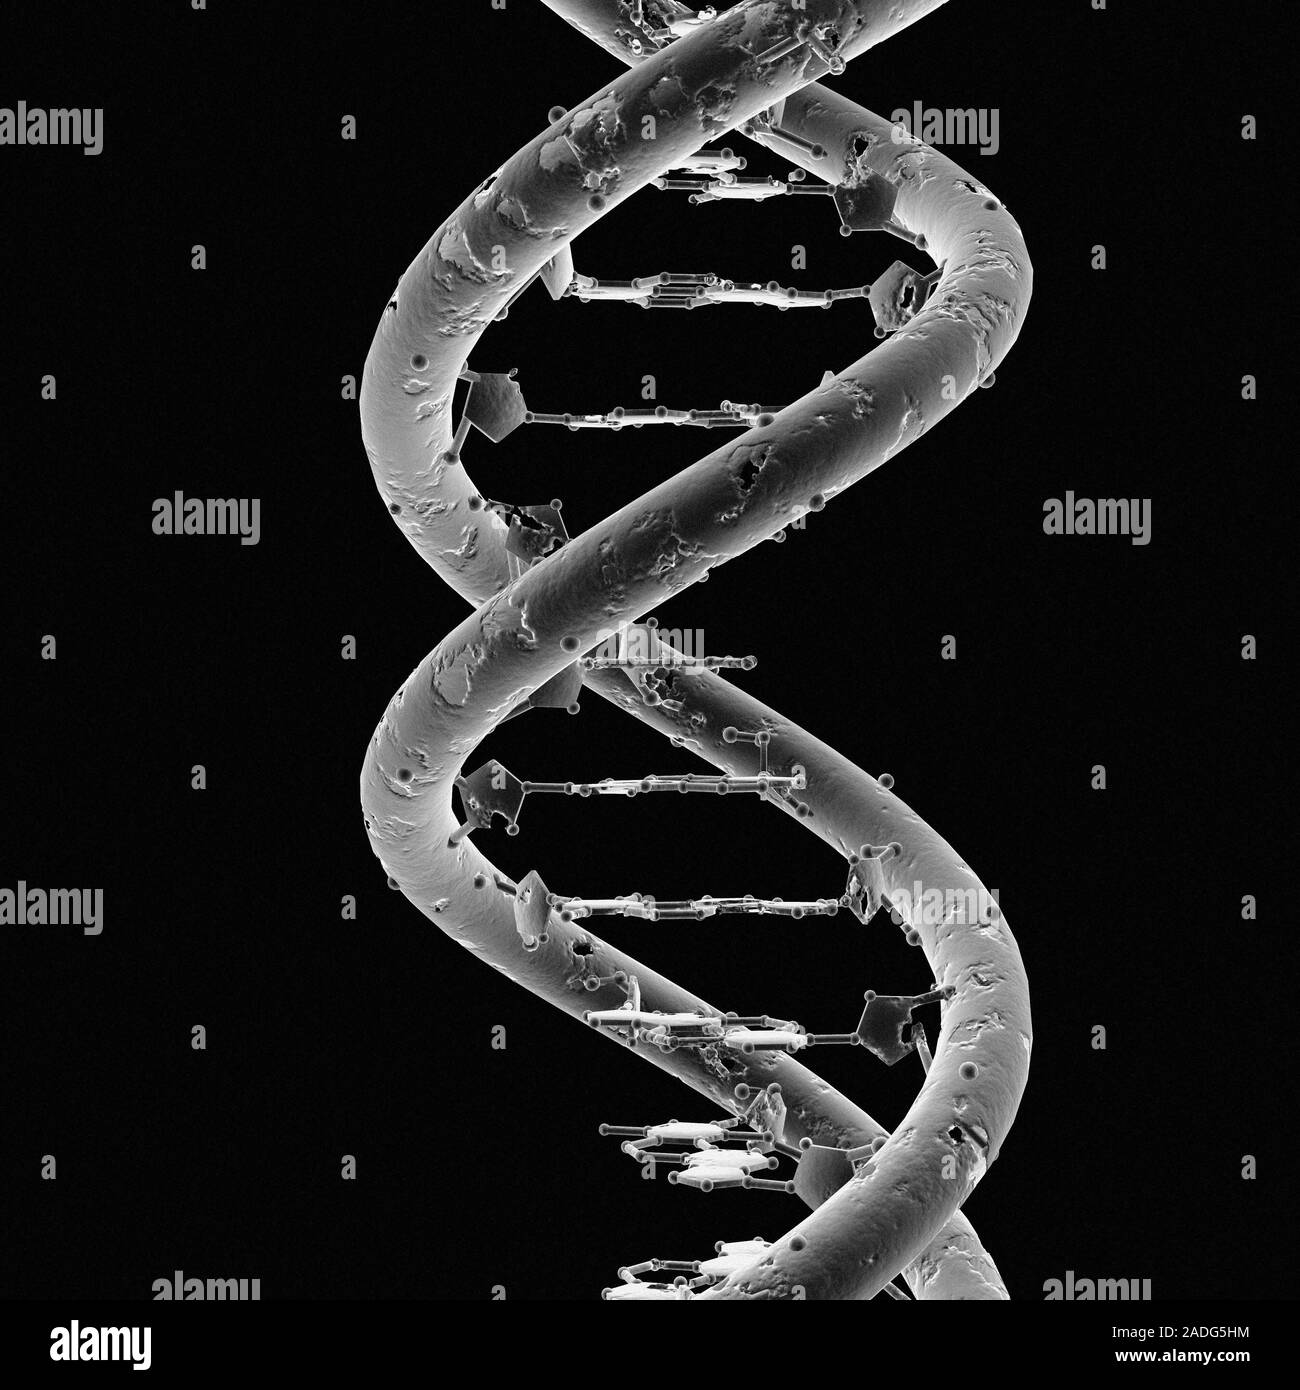 Разрушение рнк. Молекула ДНК человека под микроскопом. ДНК И РНК под микроскопом. Спиралевидная молекула ДНК. Цепочка ДНК под микроскопом.